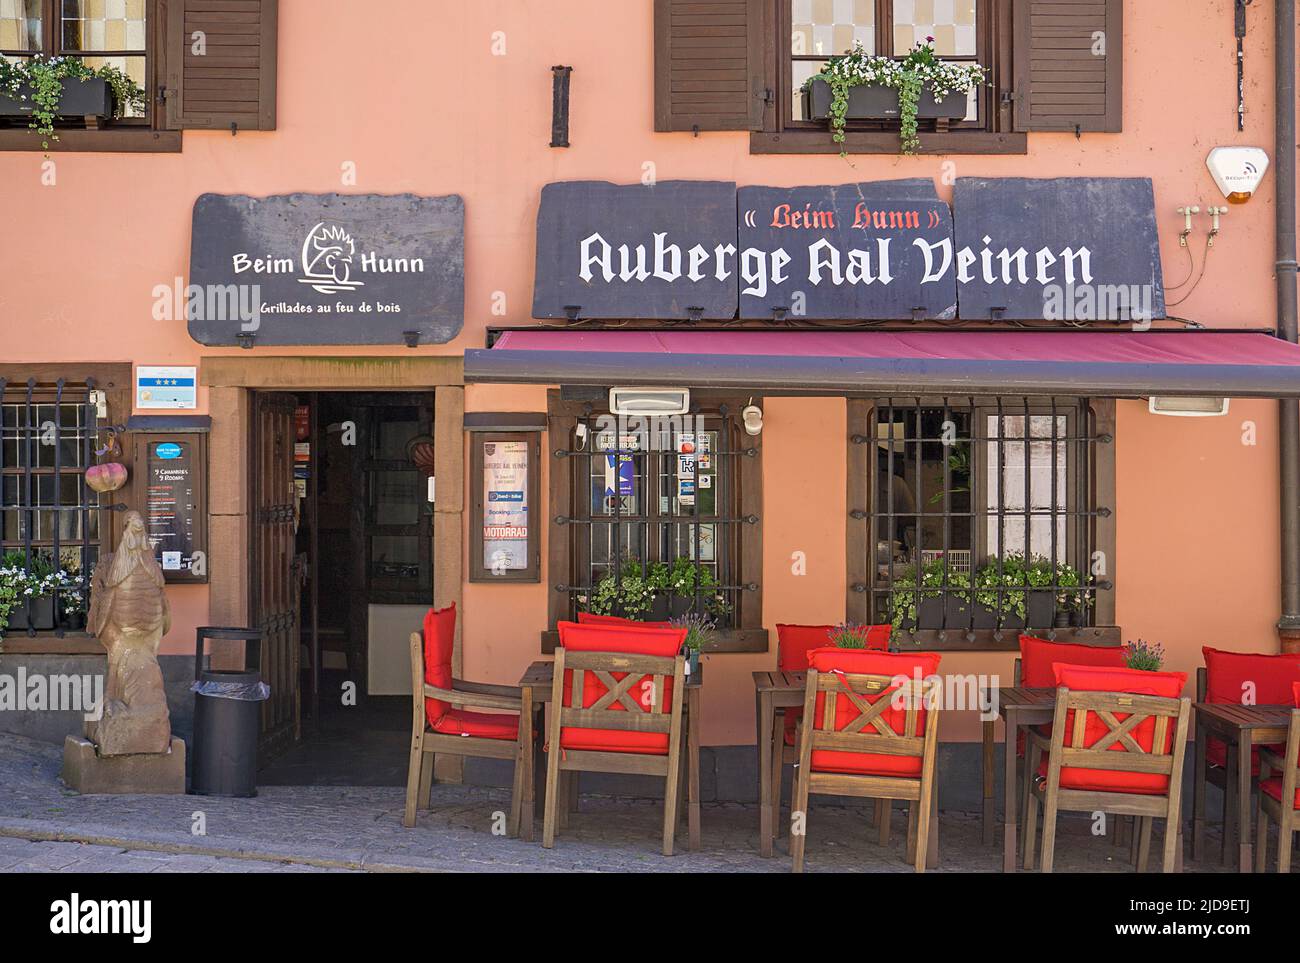 Restaurant 'Beim Hunn' dans la ville de Vianden, canton de Vianden, Grand-Duché de Luxembourg, Europe Banque D'Images